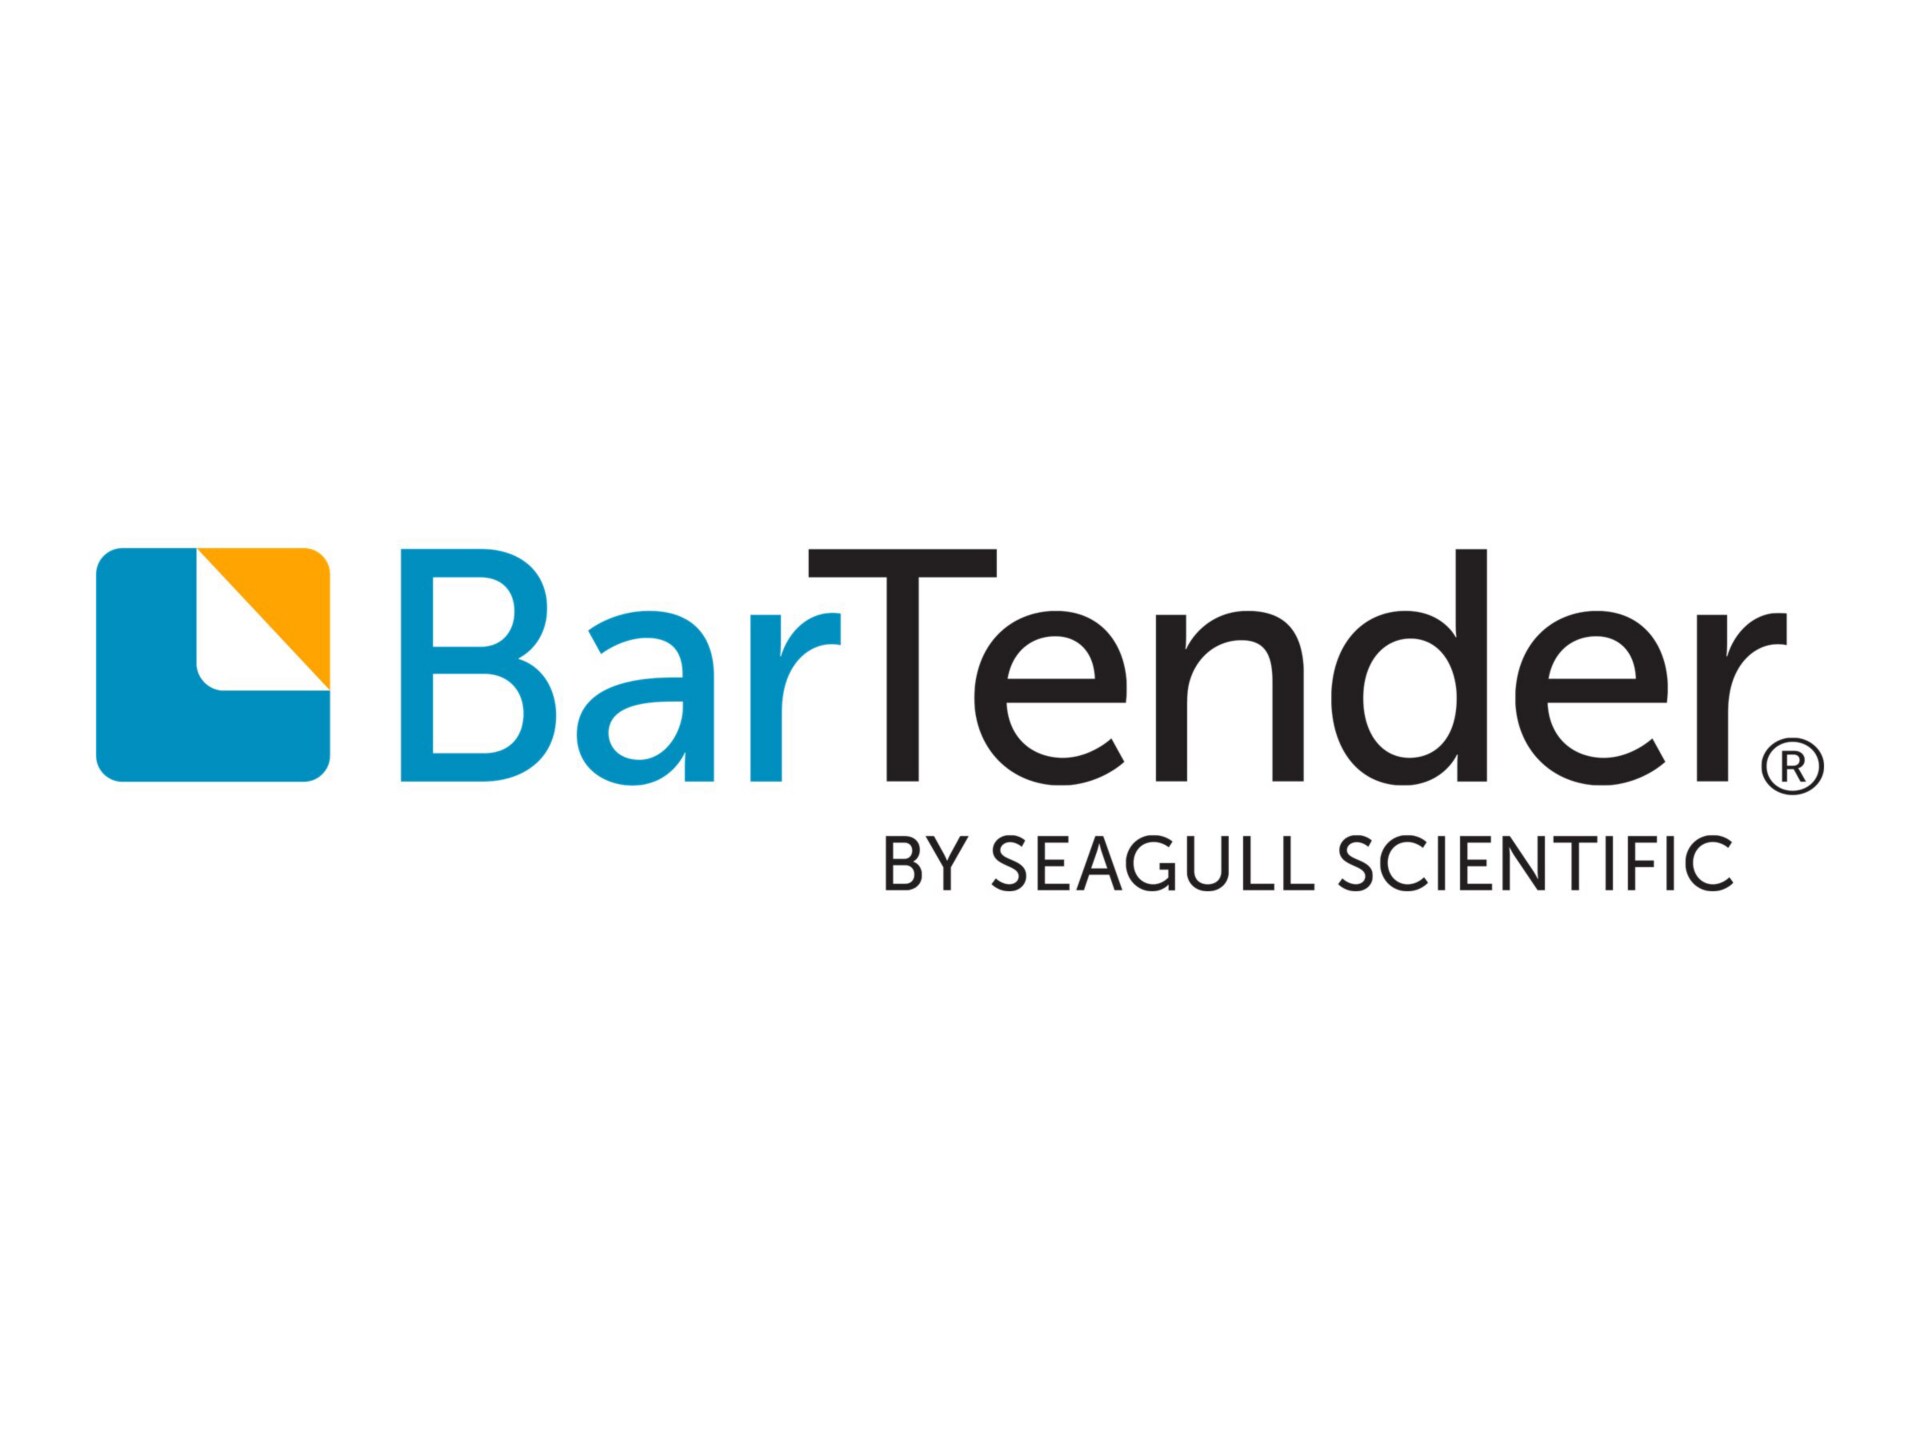 BarTender Enterprise Edition - licence de mise à niveau - 1 application